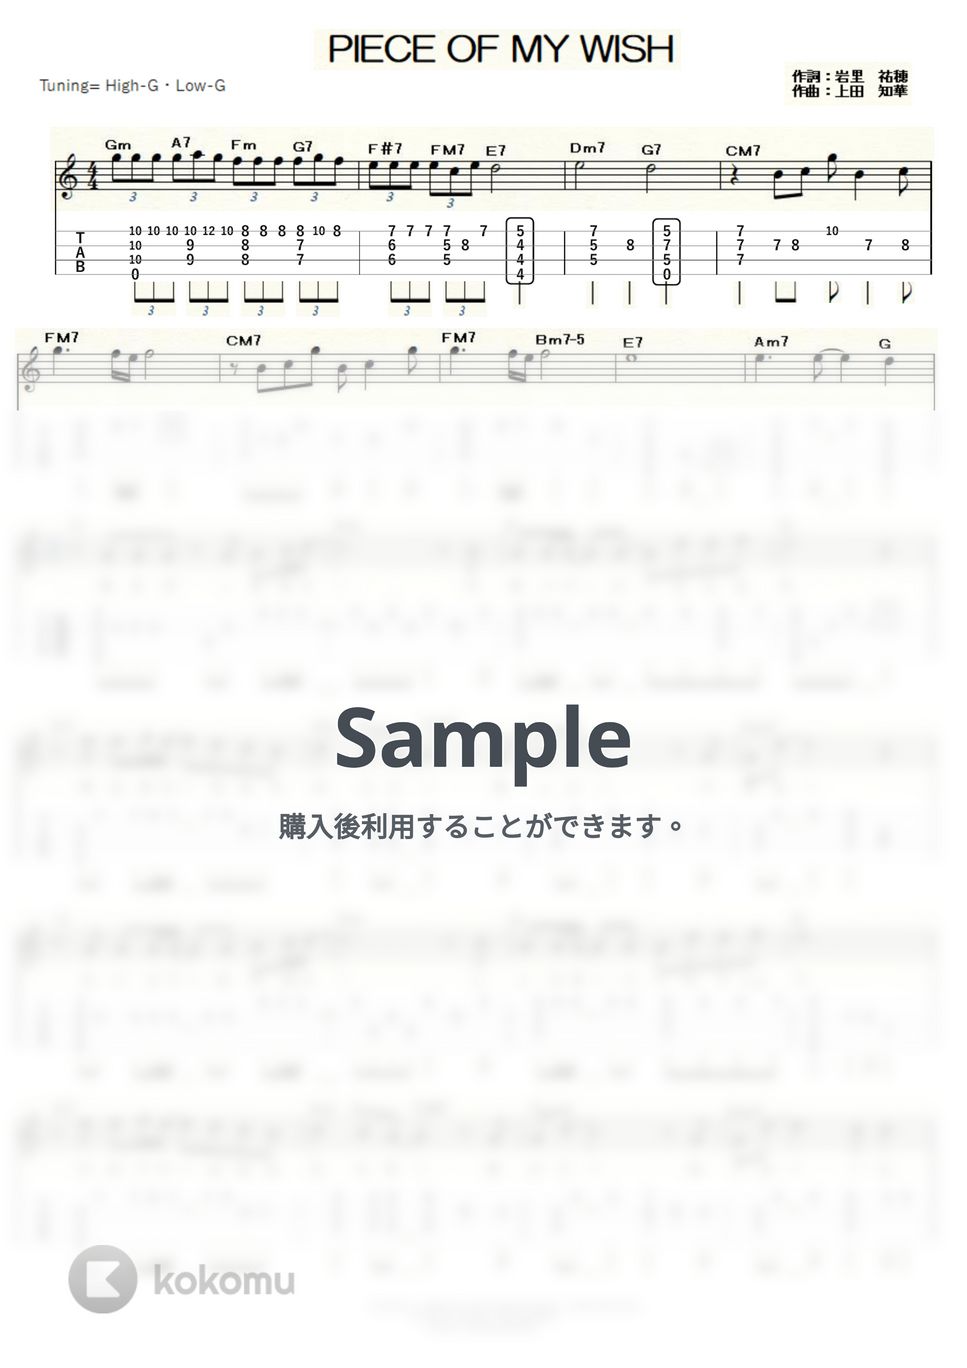 今井美樹 - ピース・オブ・マイ・ウィッシュ～PIECE OF MY WISH～ (ｳｸﾚﾚｿﾛ / High-G,Low-G / 中級～上級) by ukulelepapa